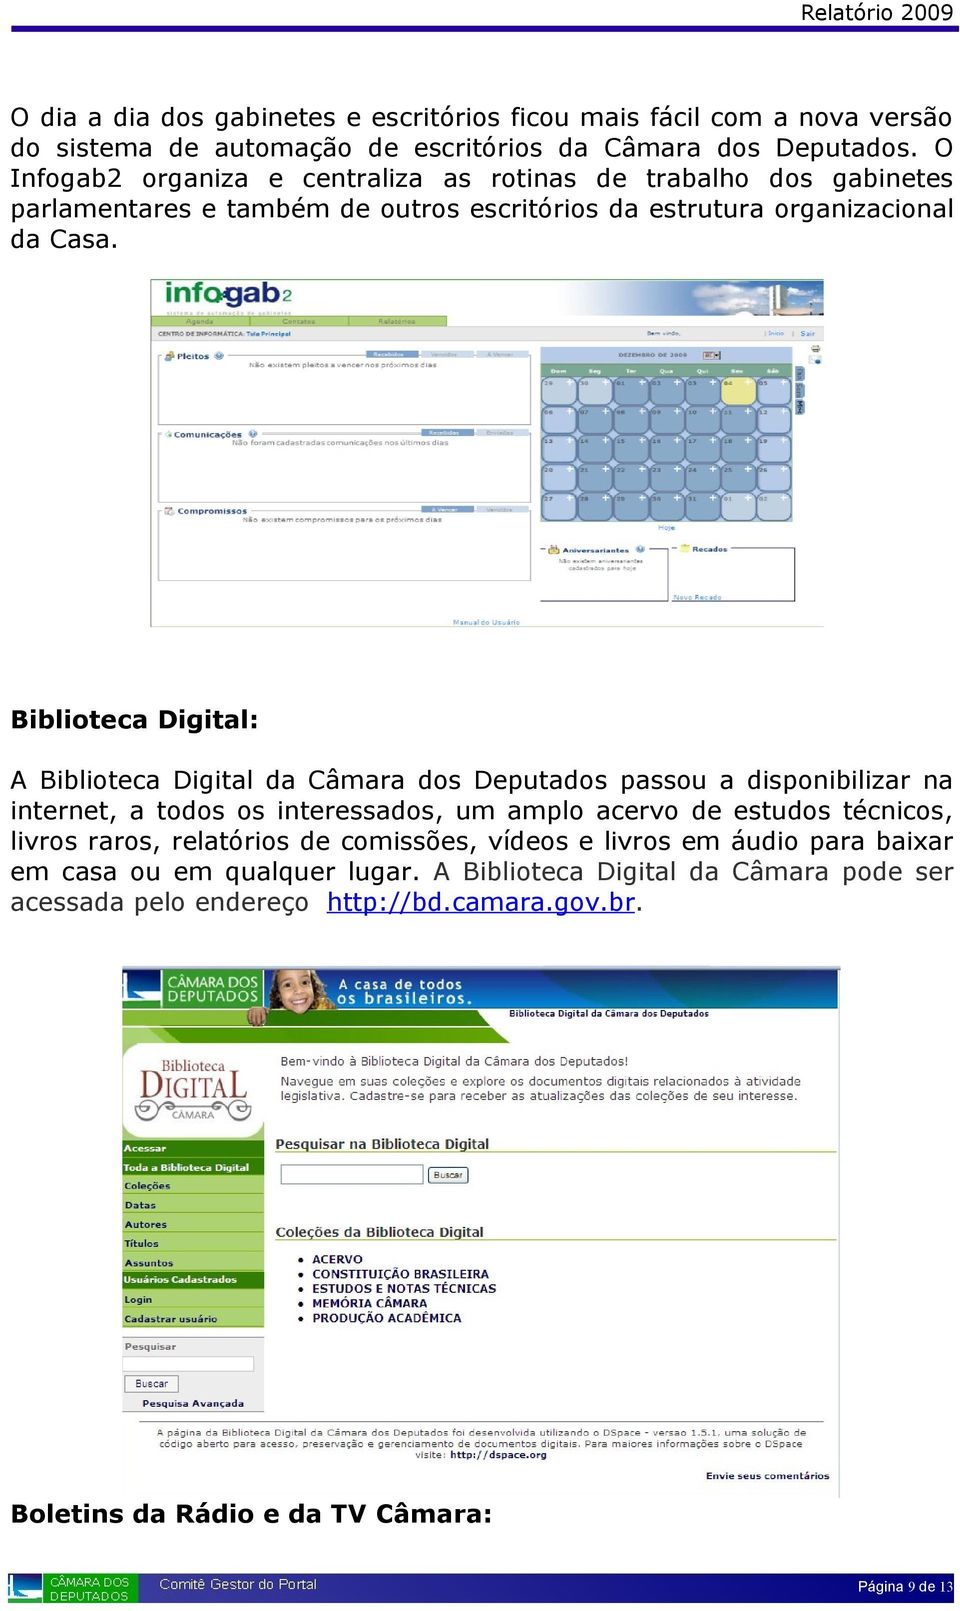 Biblioteca Digital: A Biblioteca Digital da Câmara dos Deputados passou a disponibilizar na internet, a todos os interessados, um amplo acervo de estudos técnicos, livros